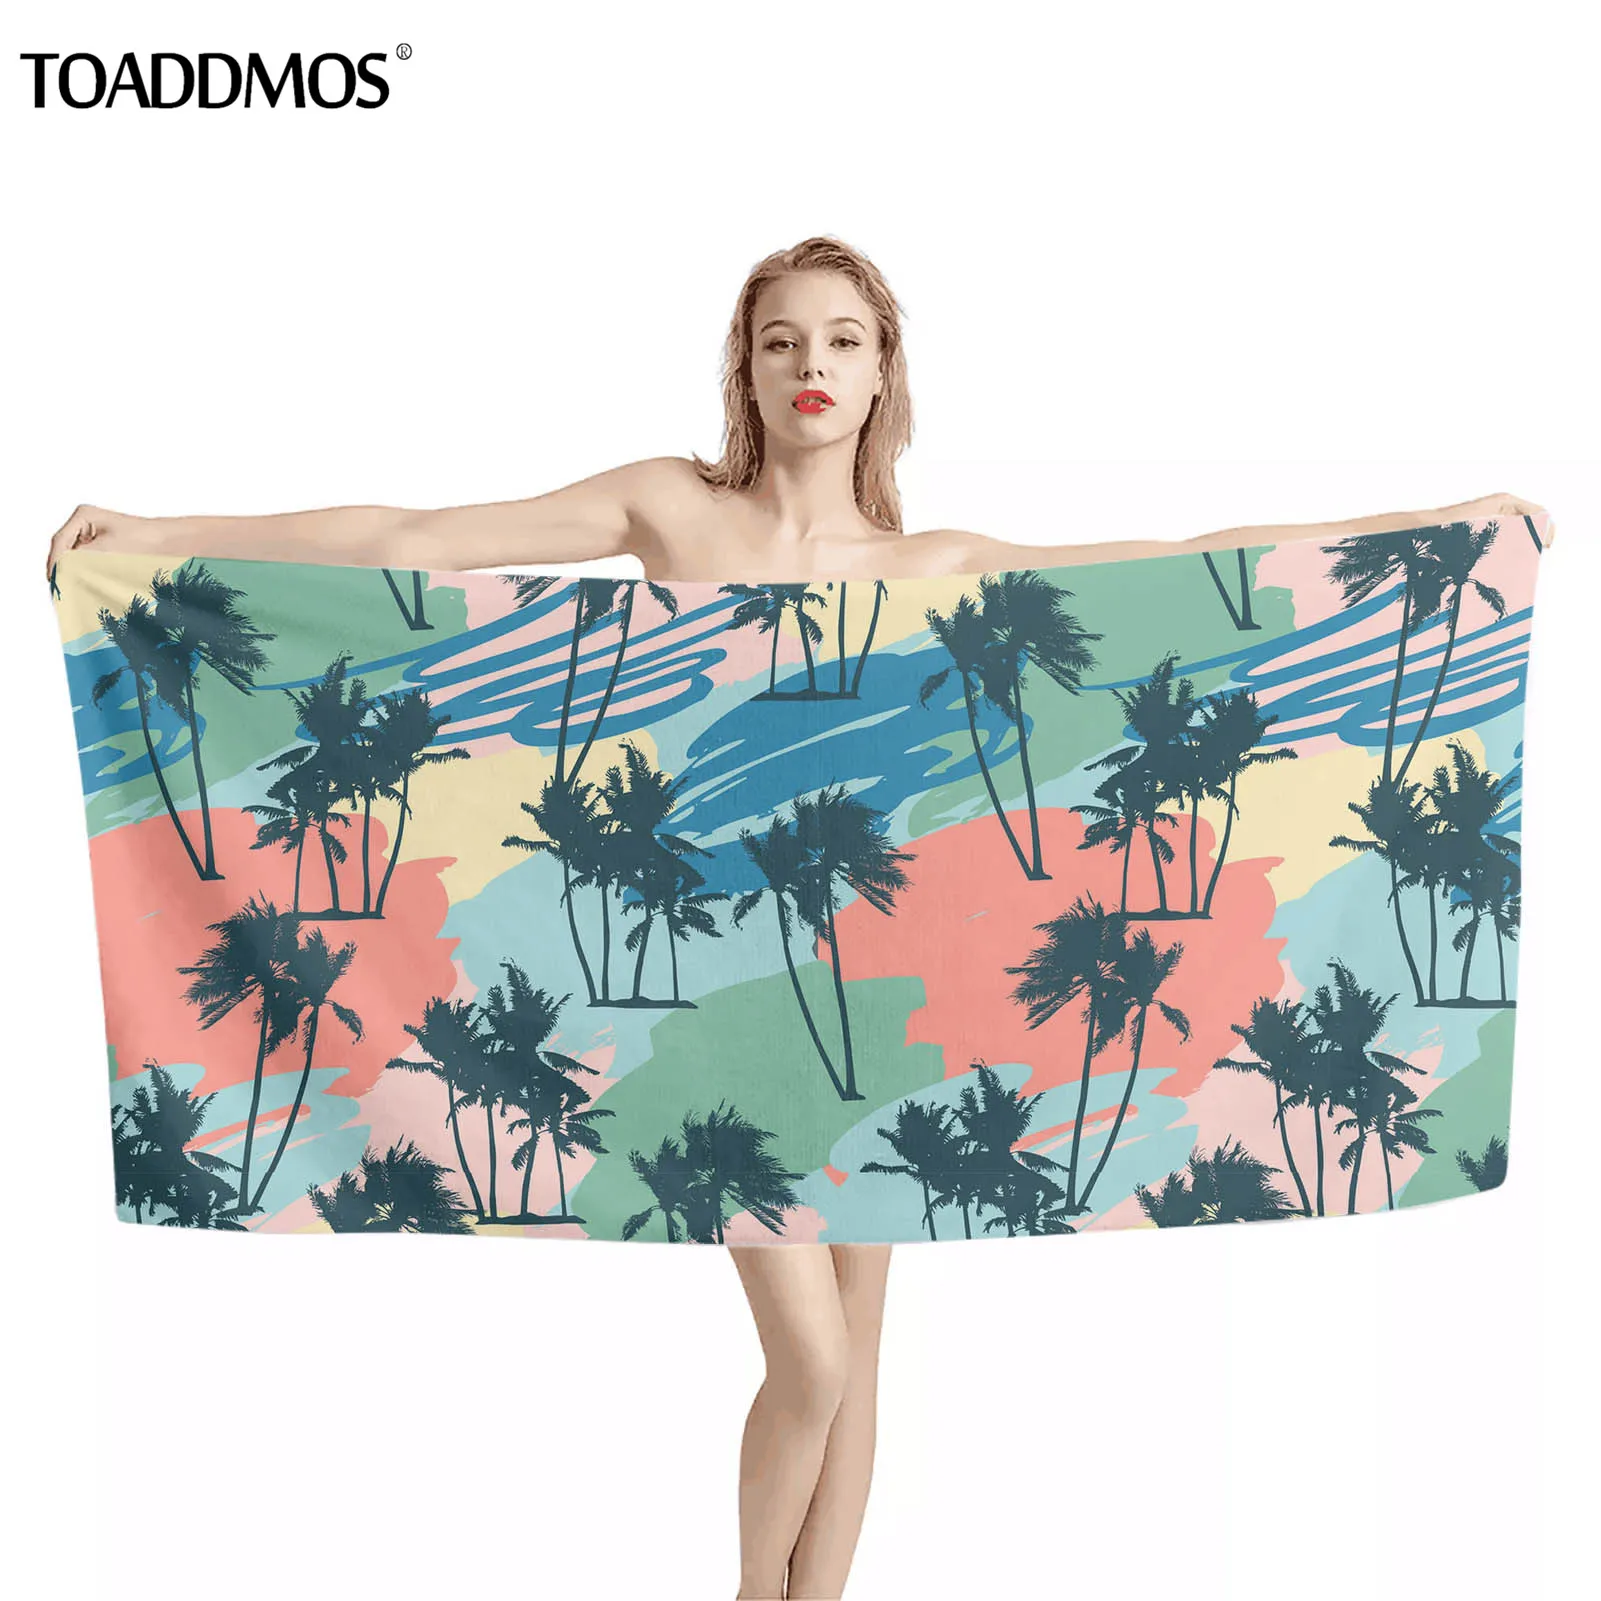 

TOADDMOS полотенце для ванны с рисунком тропической пальмы океанских волн мягкое пляжное полотенце премиум-класса быстросохнущее полотенце дл...